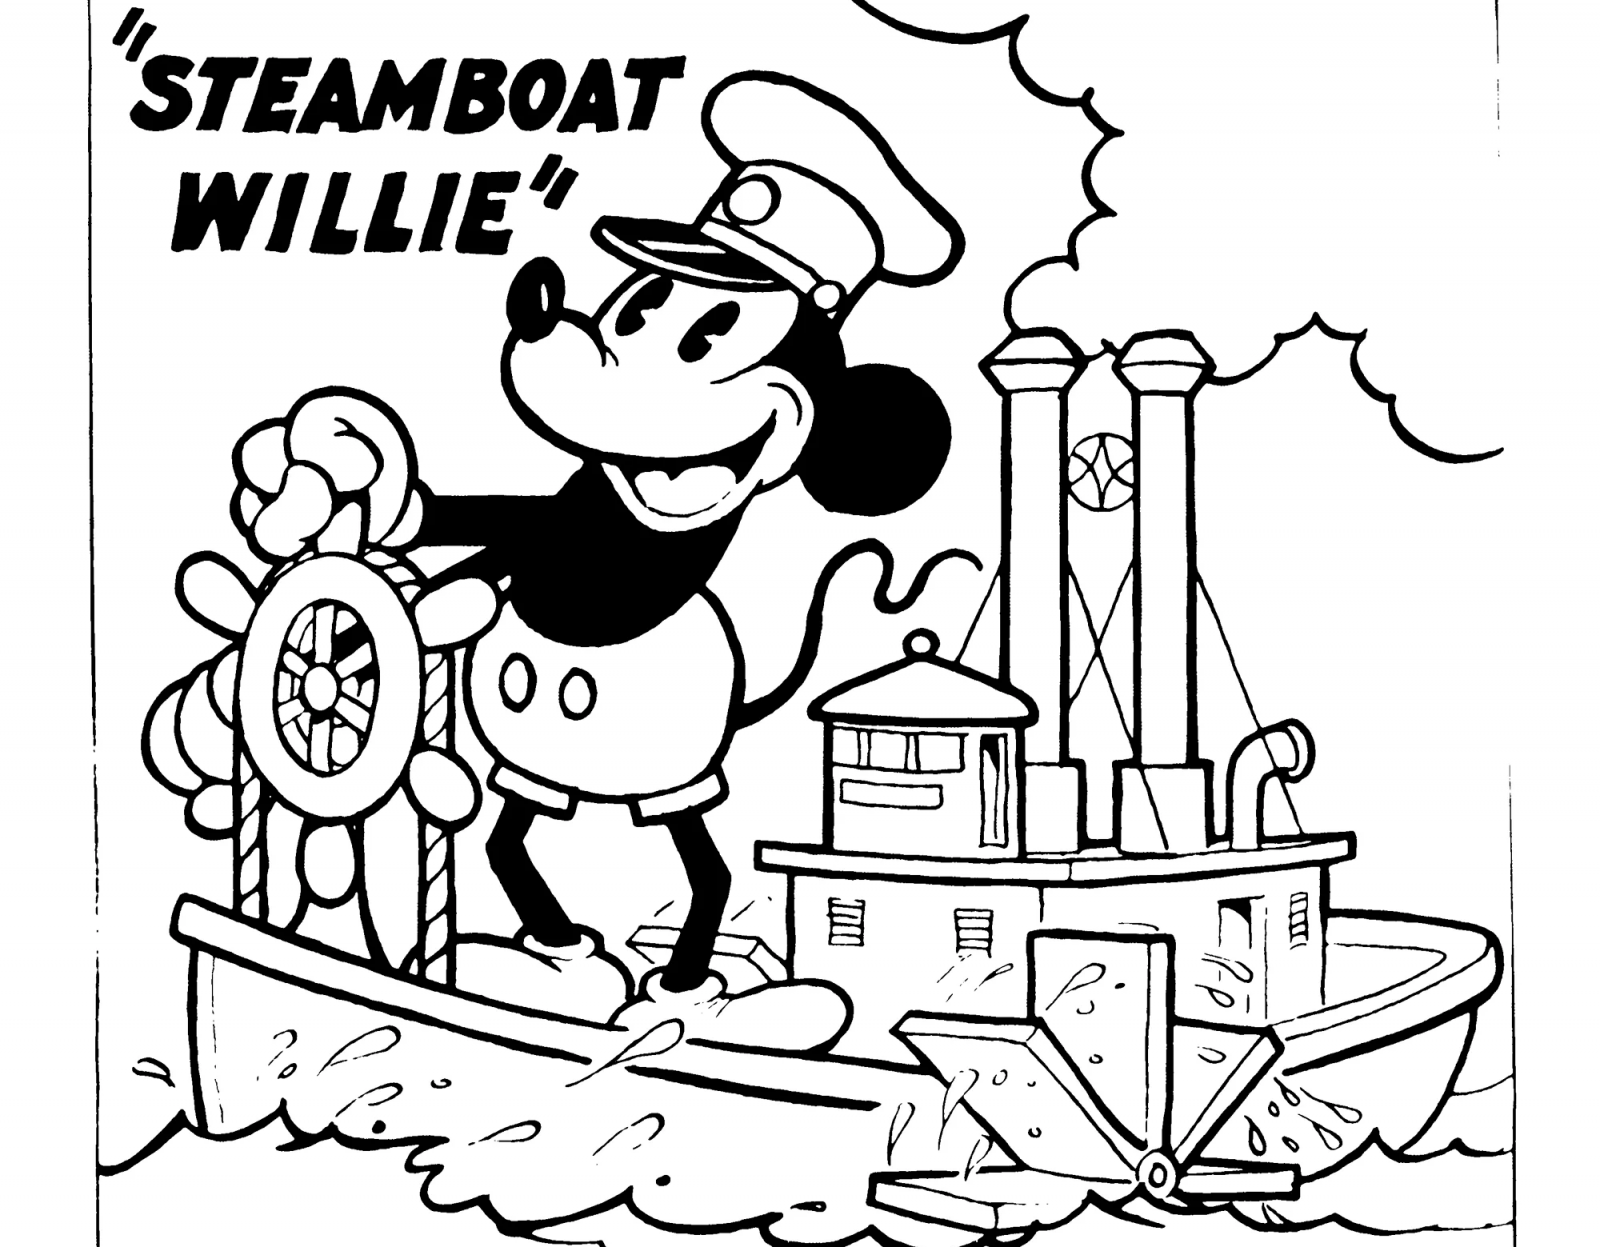 A Willie gőzhajó 1928-as plaktájának részlete | Fotó: Wikipédia